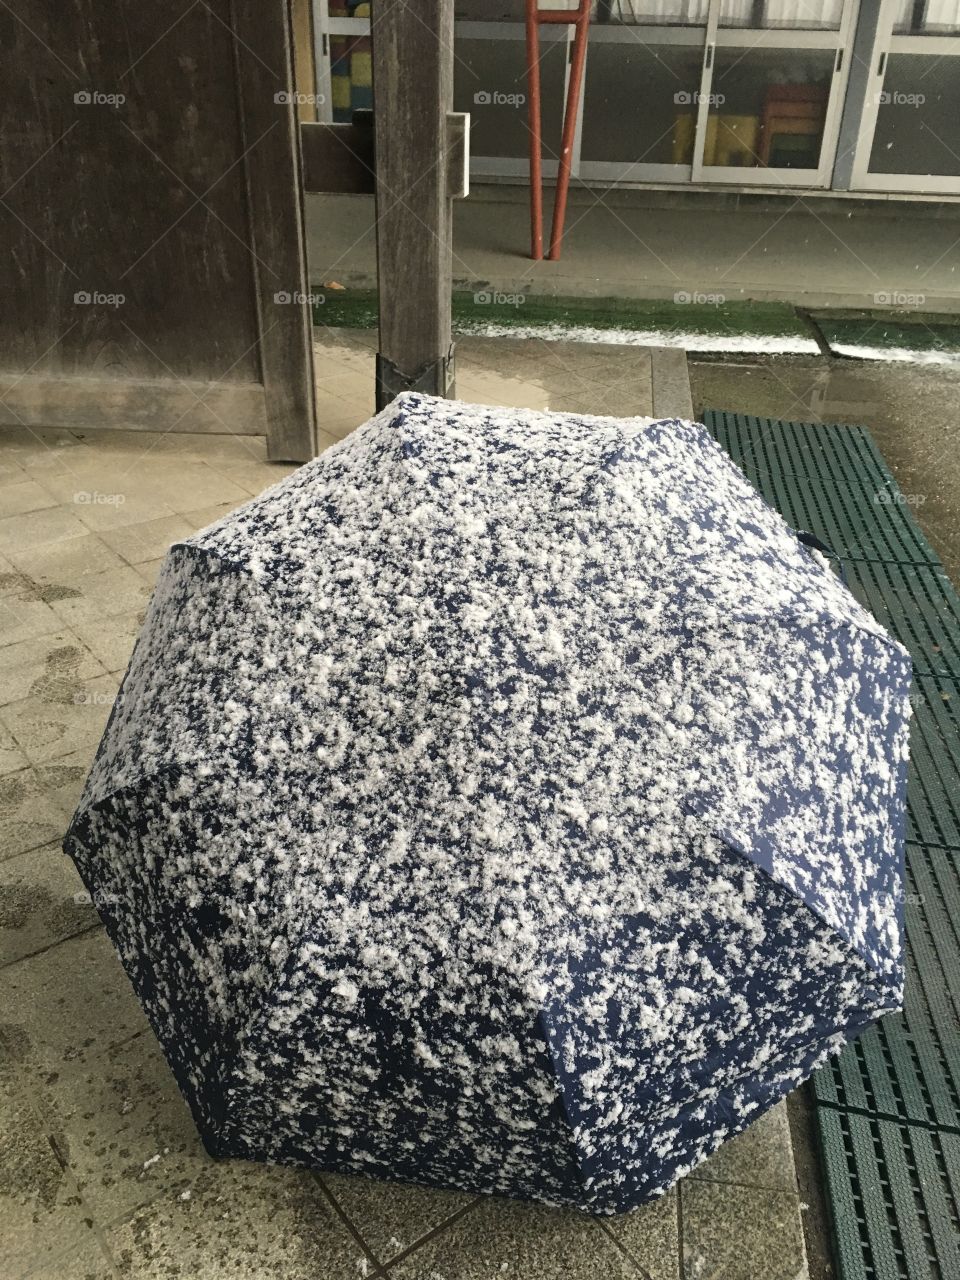 Snow in umbrella